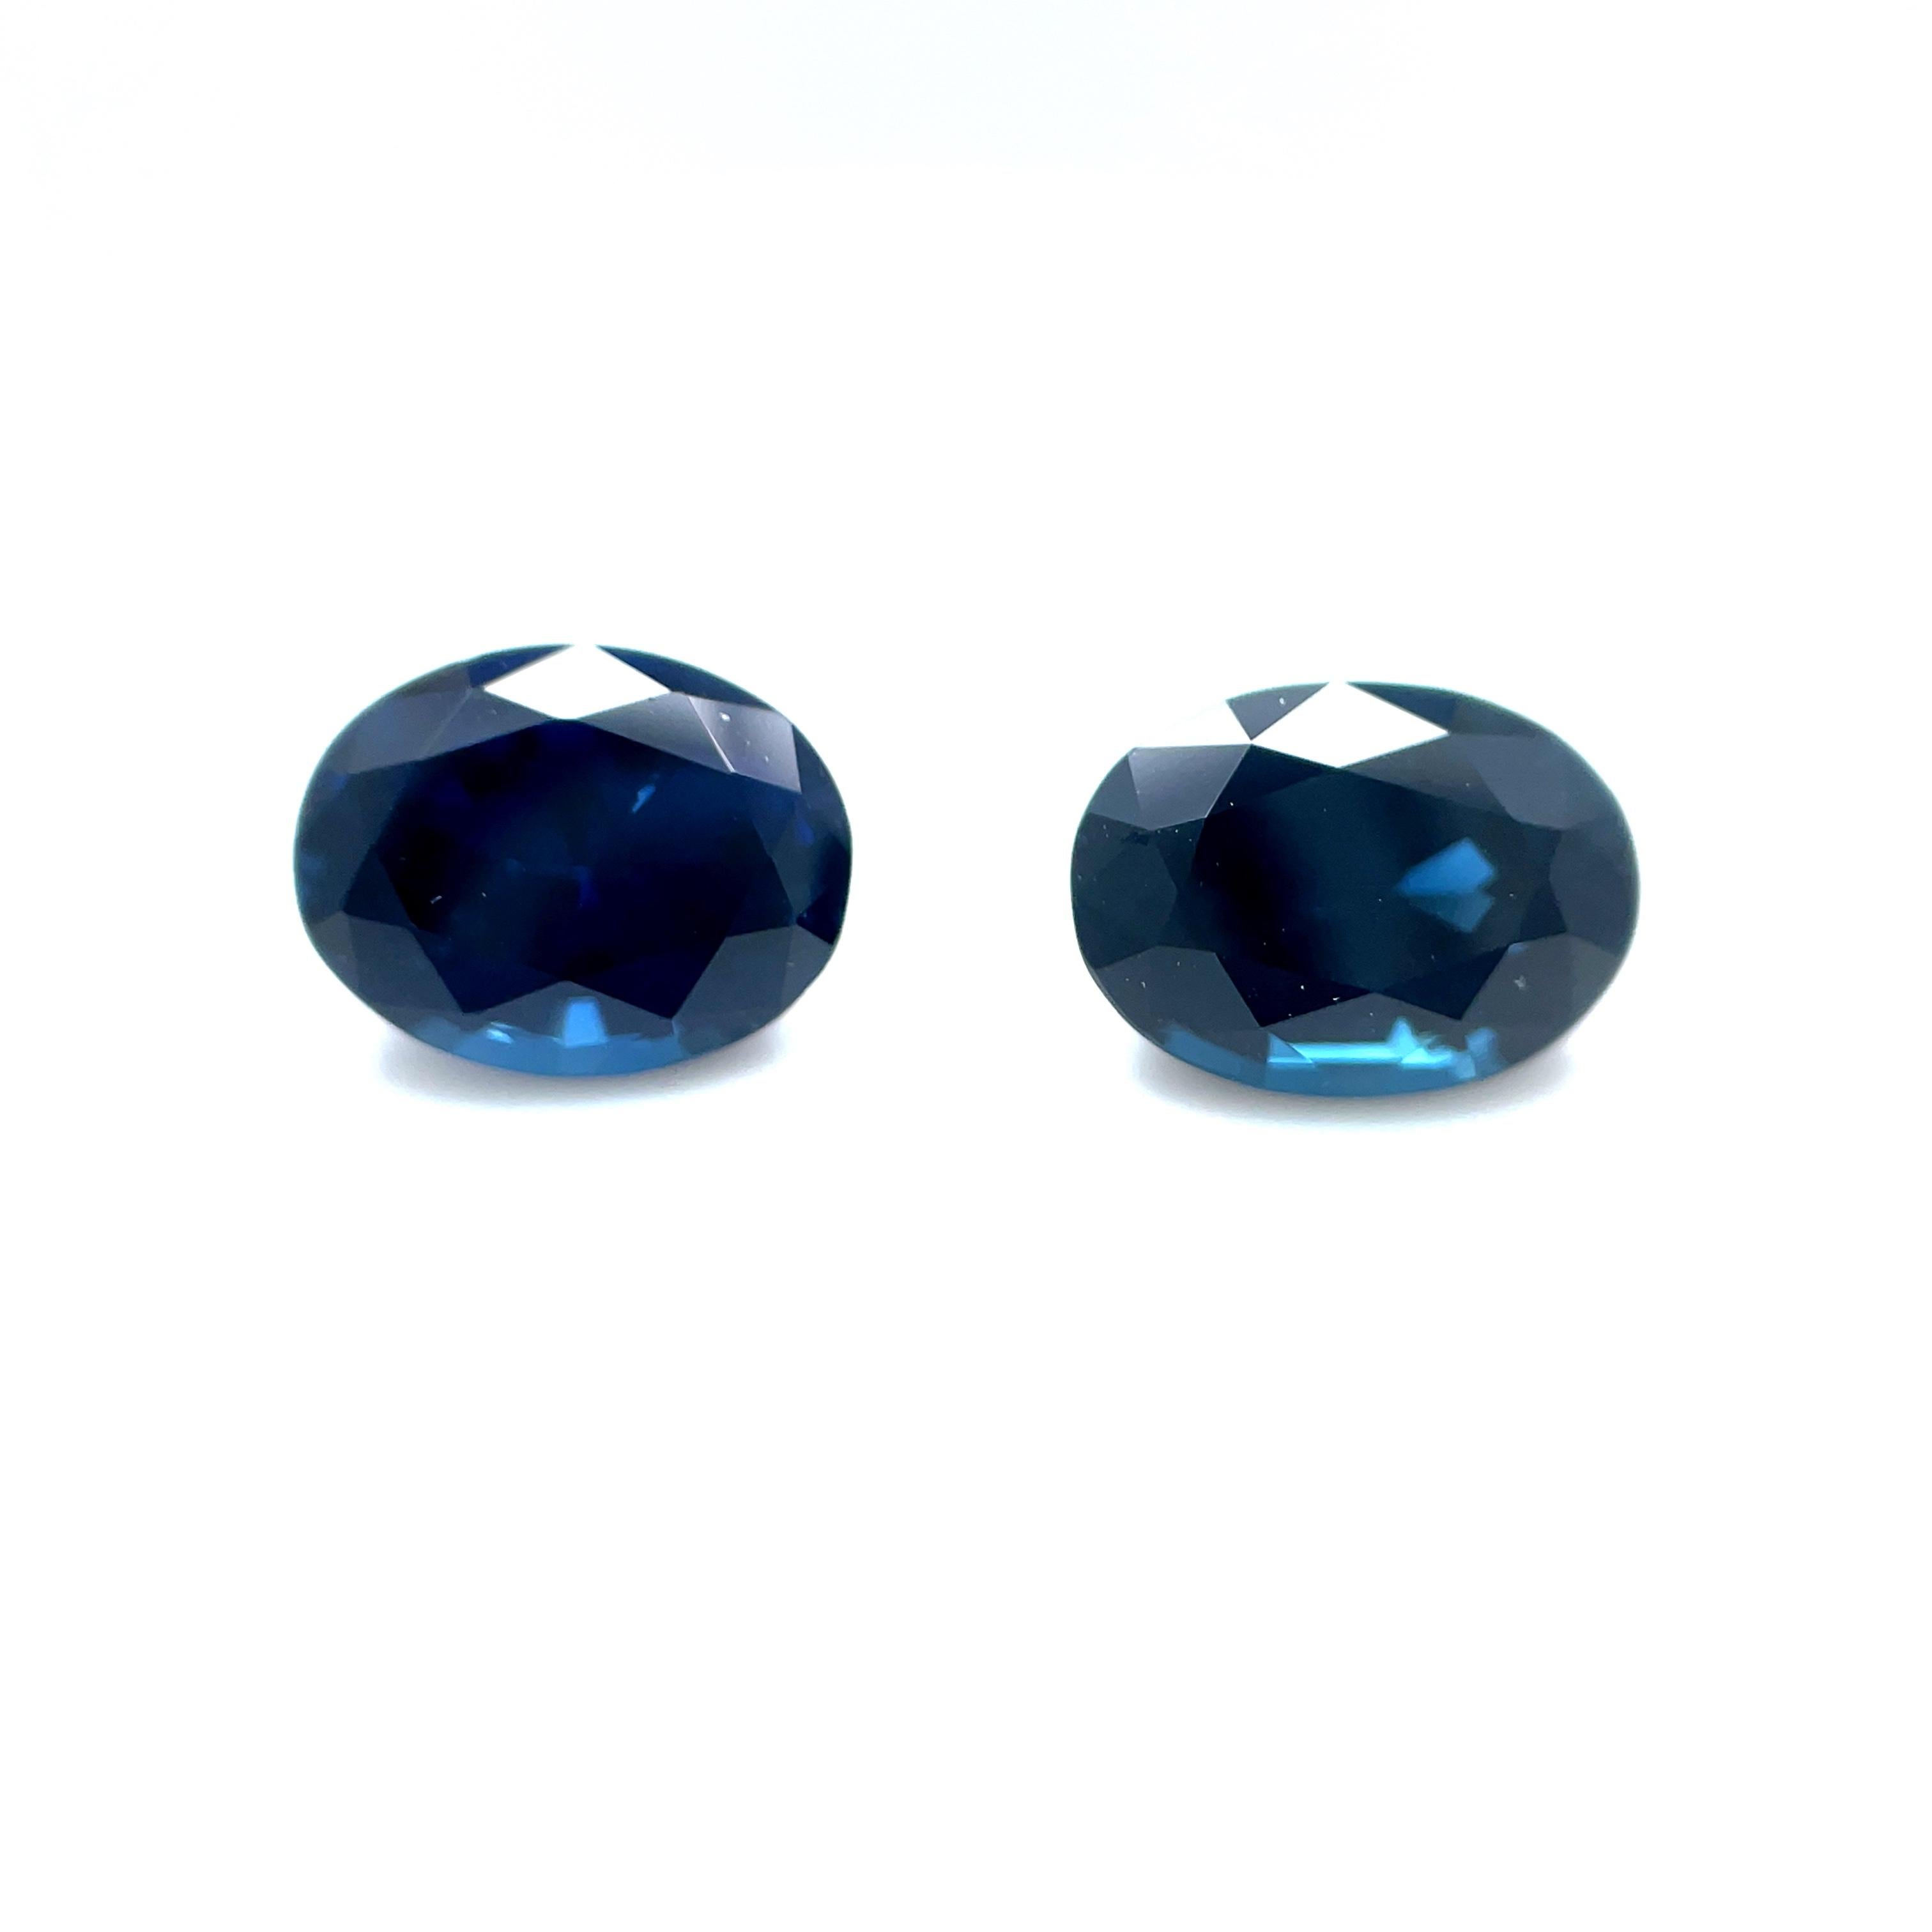 Königsblaue Saphir-Ohrringe, was könnte königlicher sein? Dieses Paar von reich gefärbten blauen Saphiren wiegt 3,82 Karat, ist sehr sauber und hat eine wunderschöne Farbe! Die klassische ovale Form bietet unendlich viele Gestaltungsmöglichkeiten.